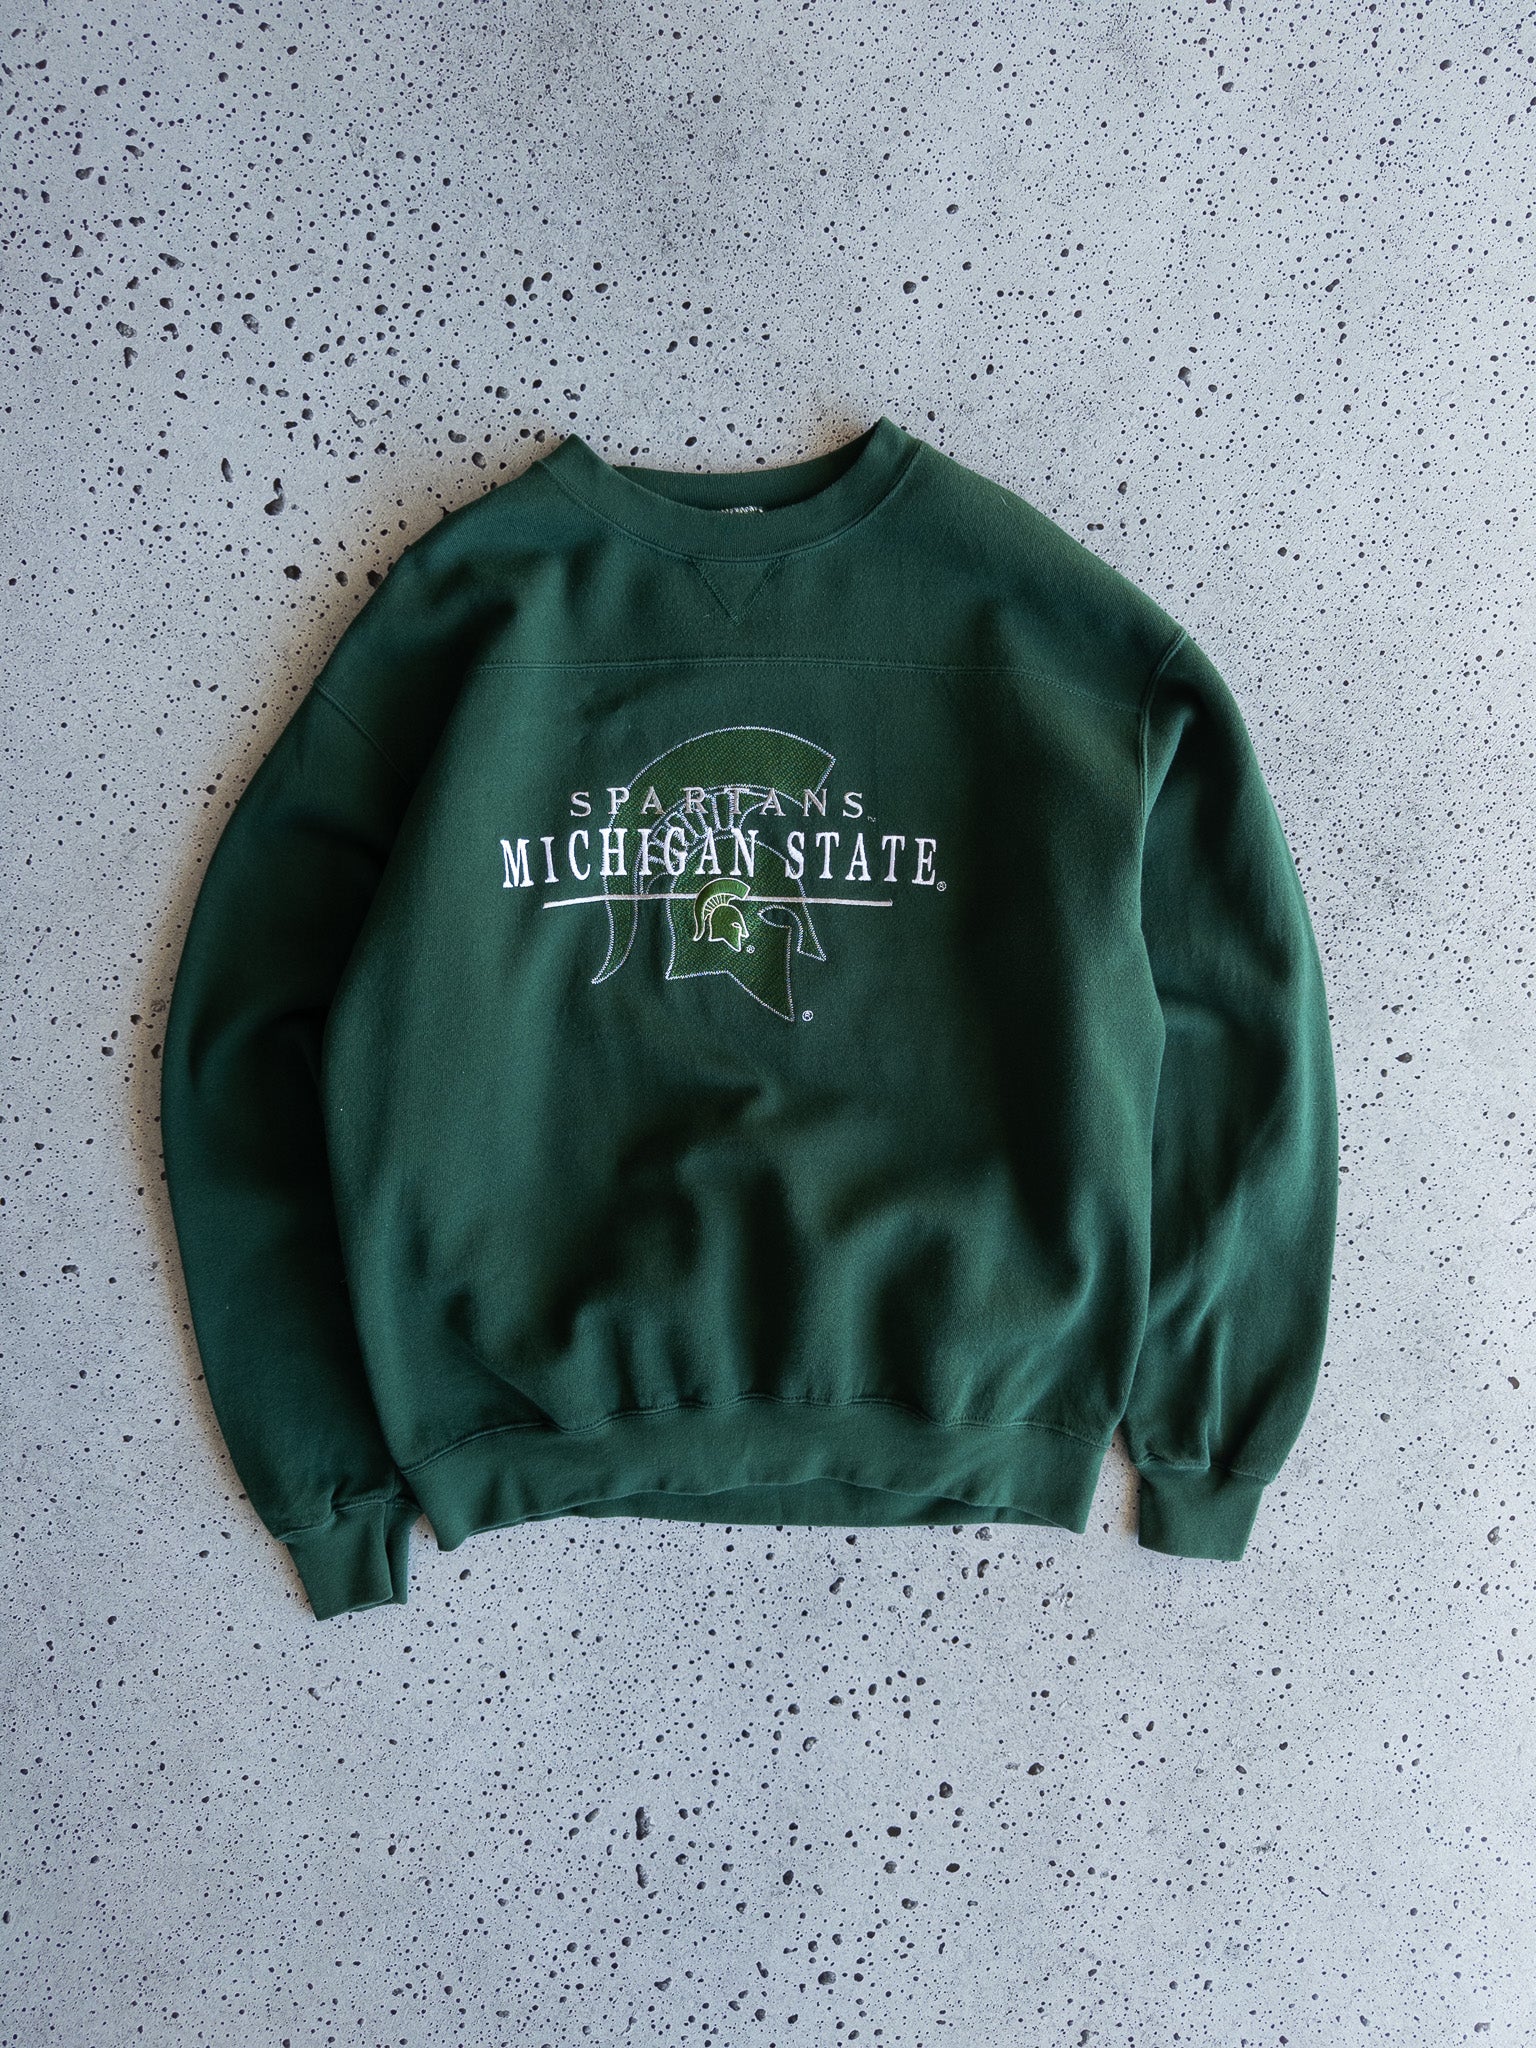 Vintage Michigan State Spartans Sweatshirt (L)